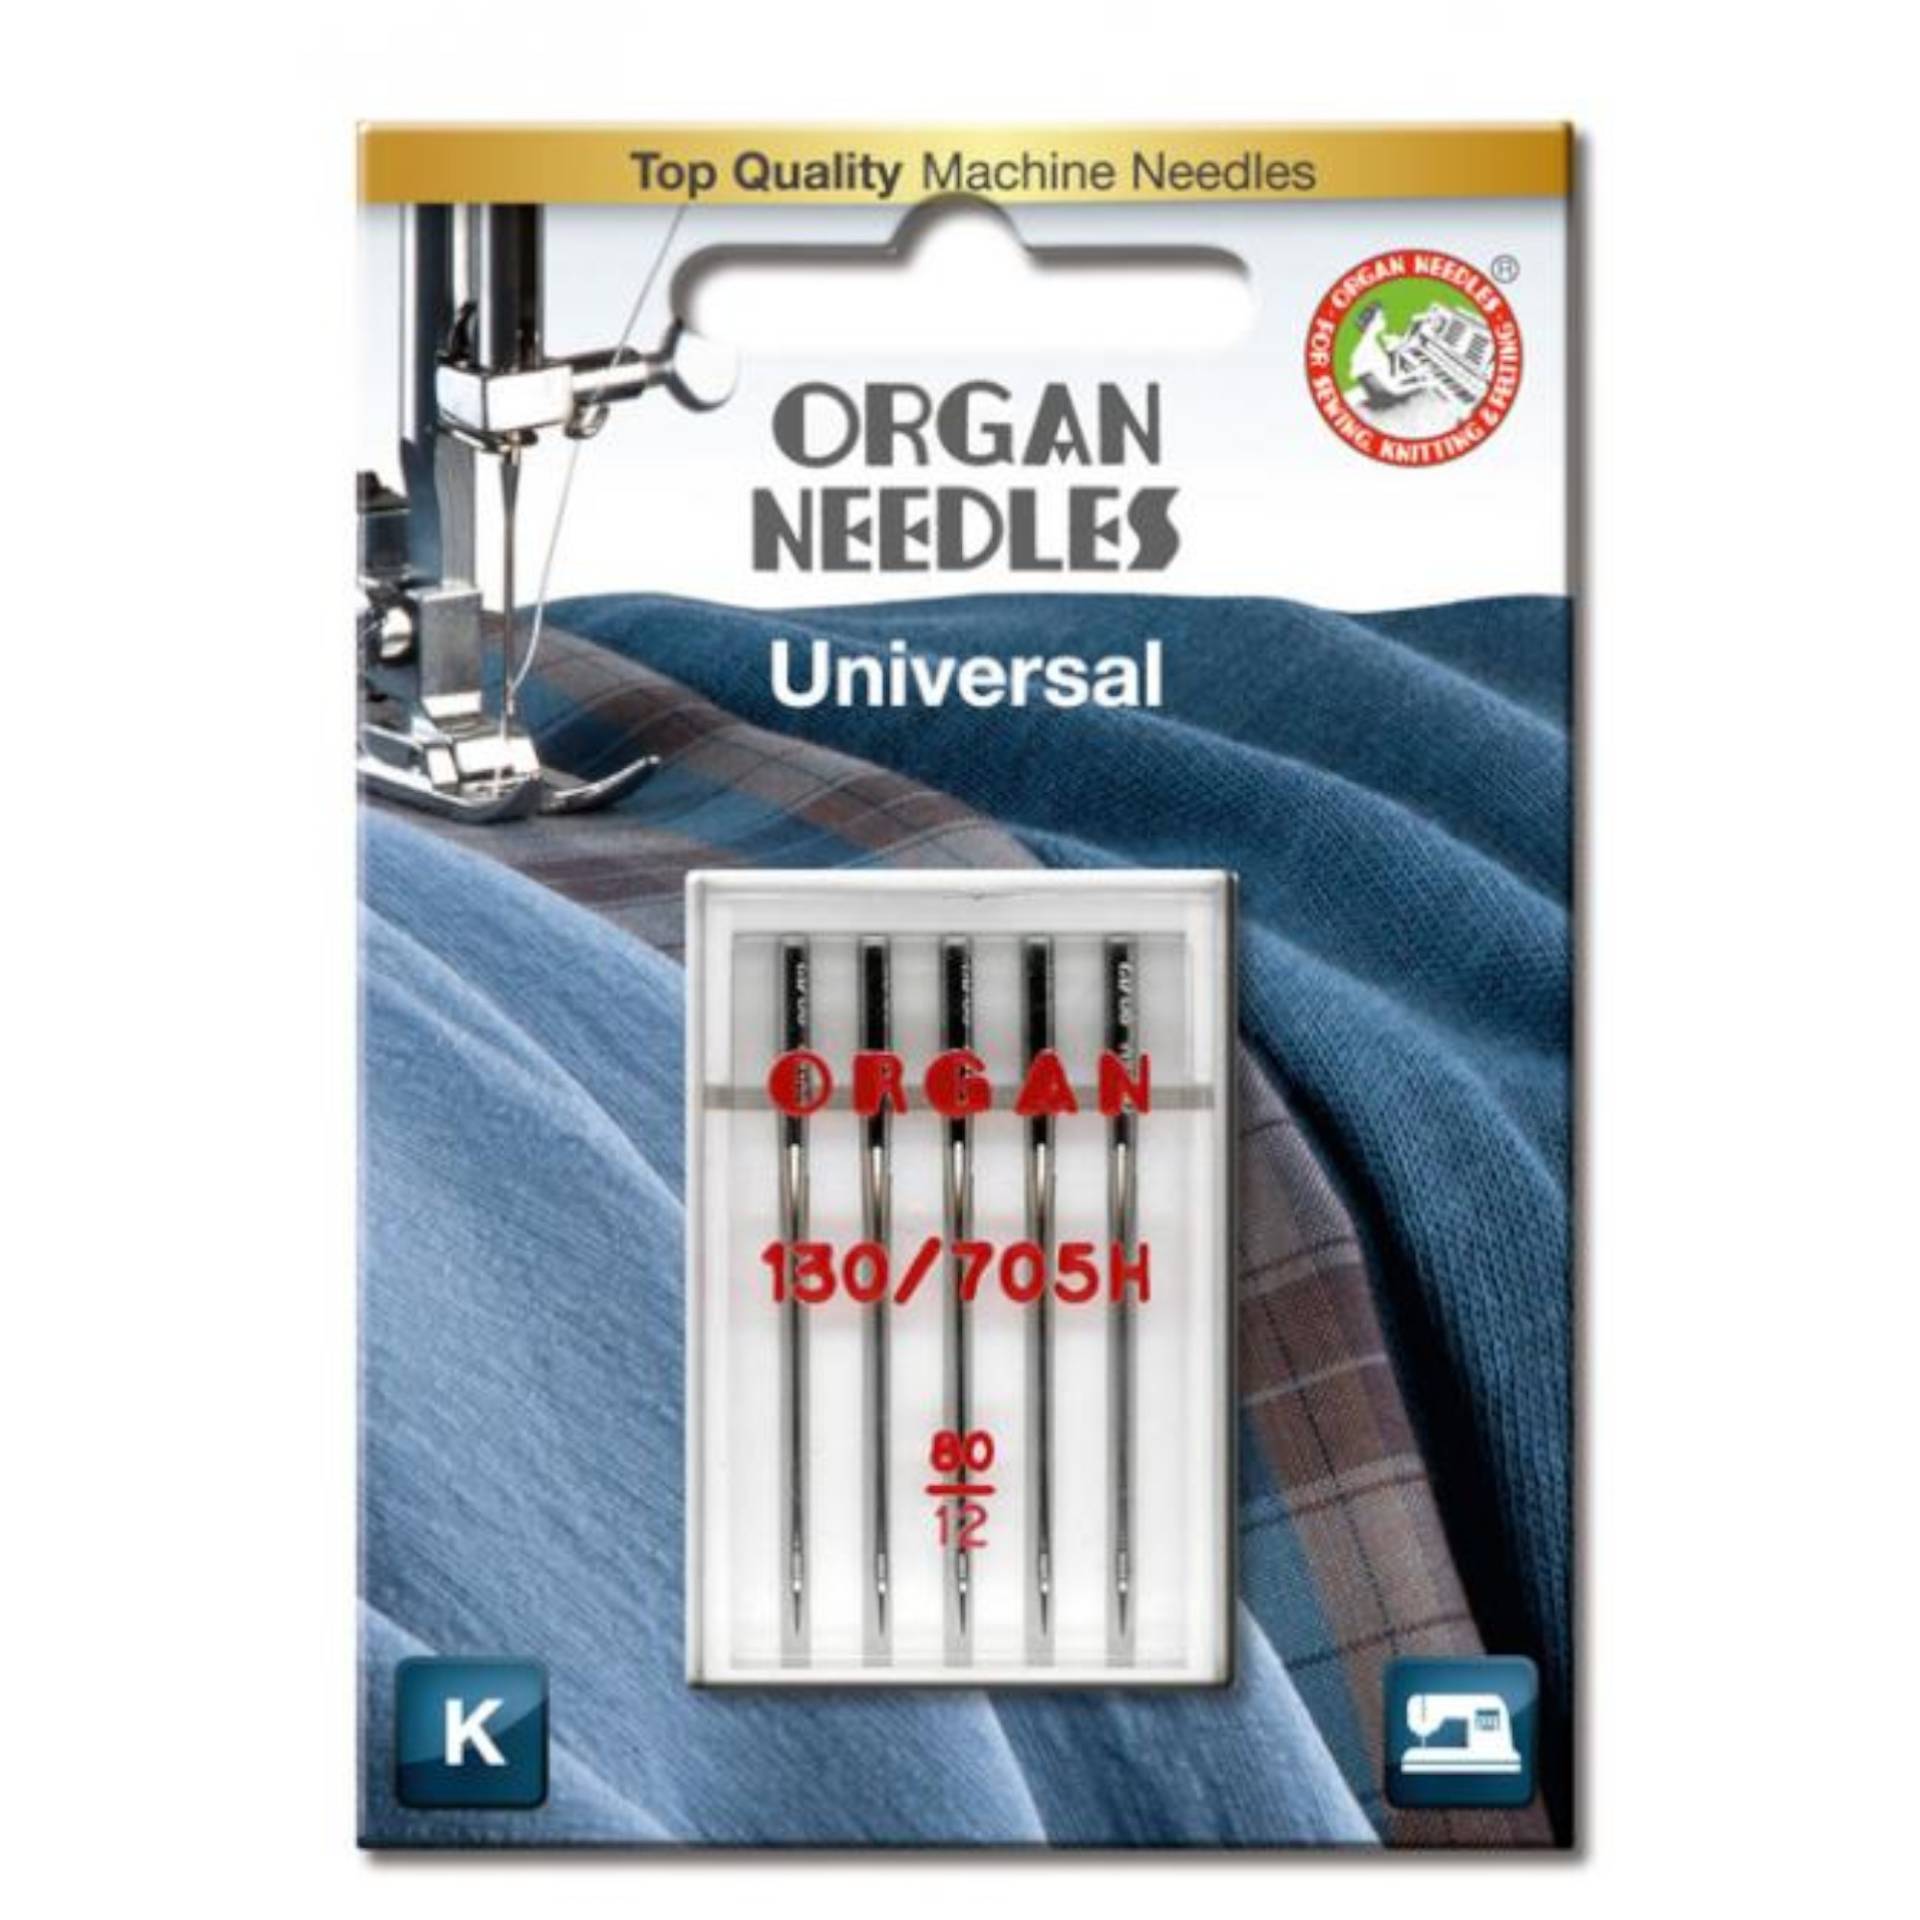 5 Organ Nähmaschinennadeln 130/705 H, Universal 80 von Stoffe Hemmers